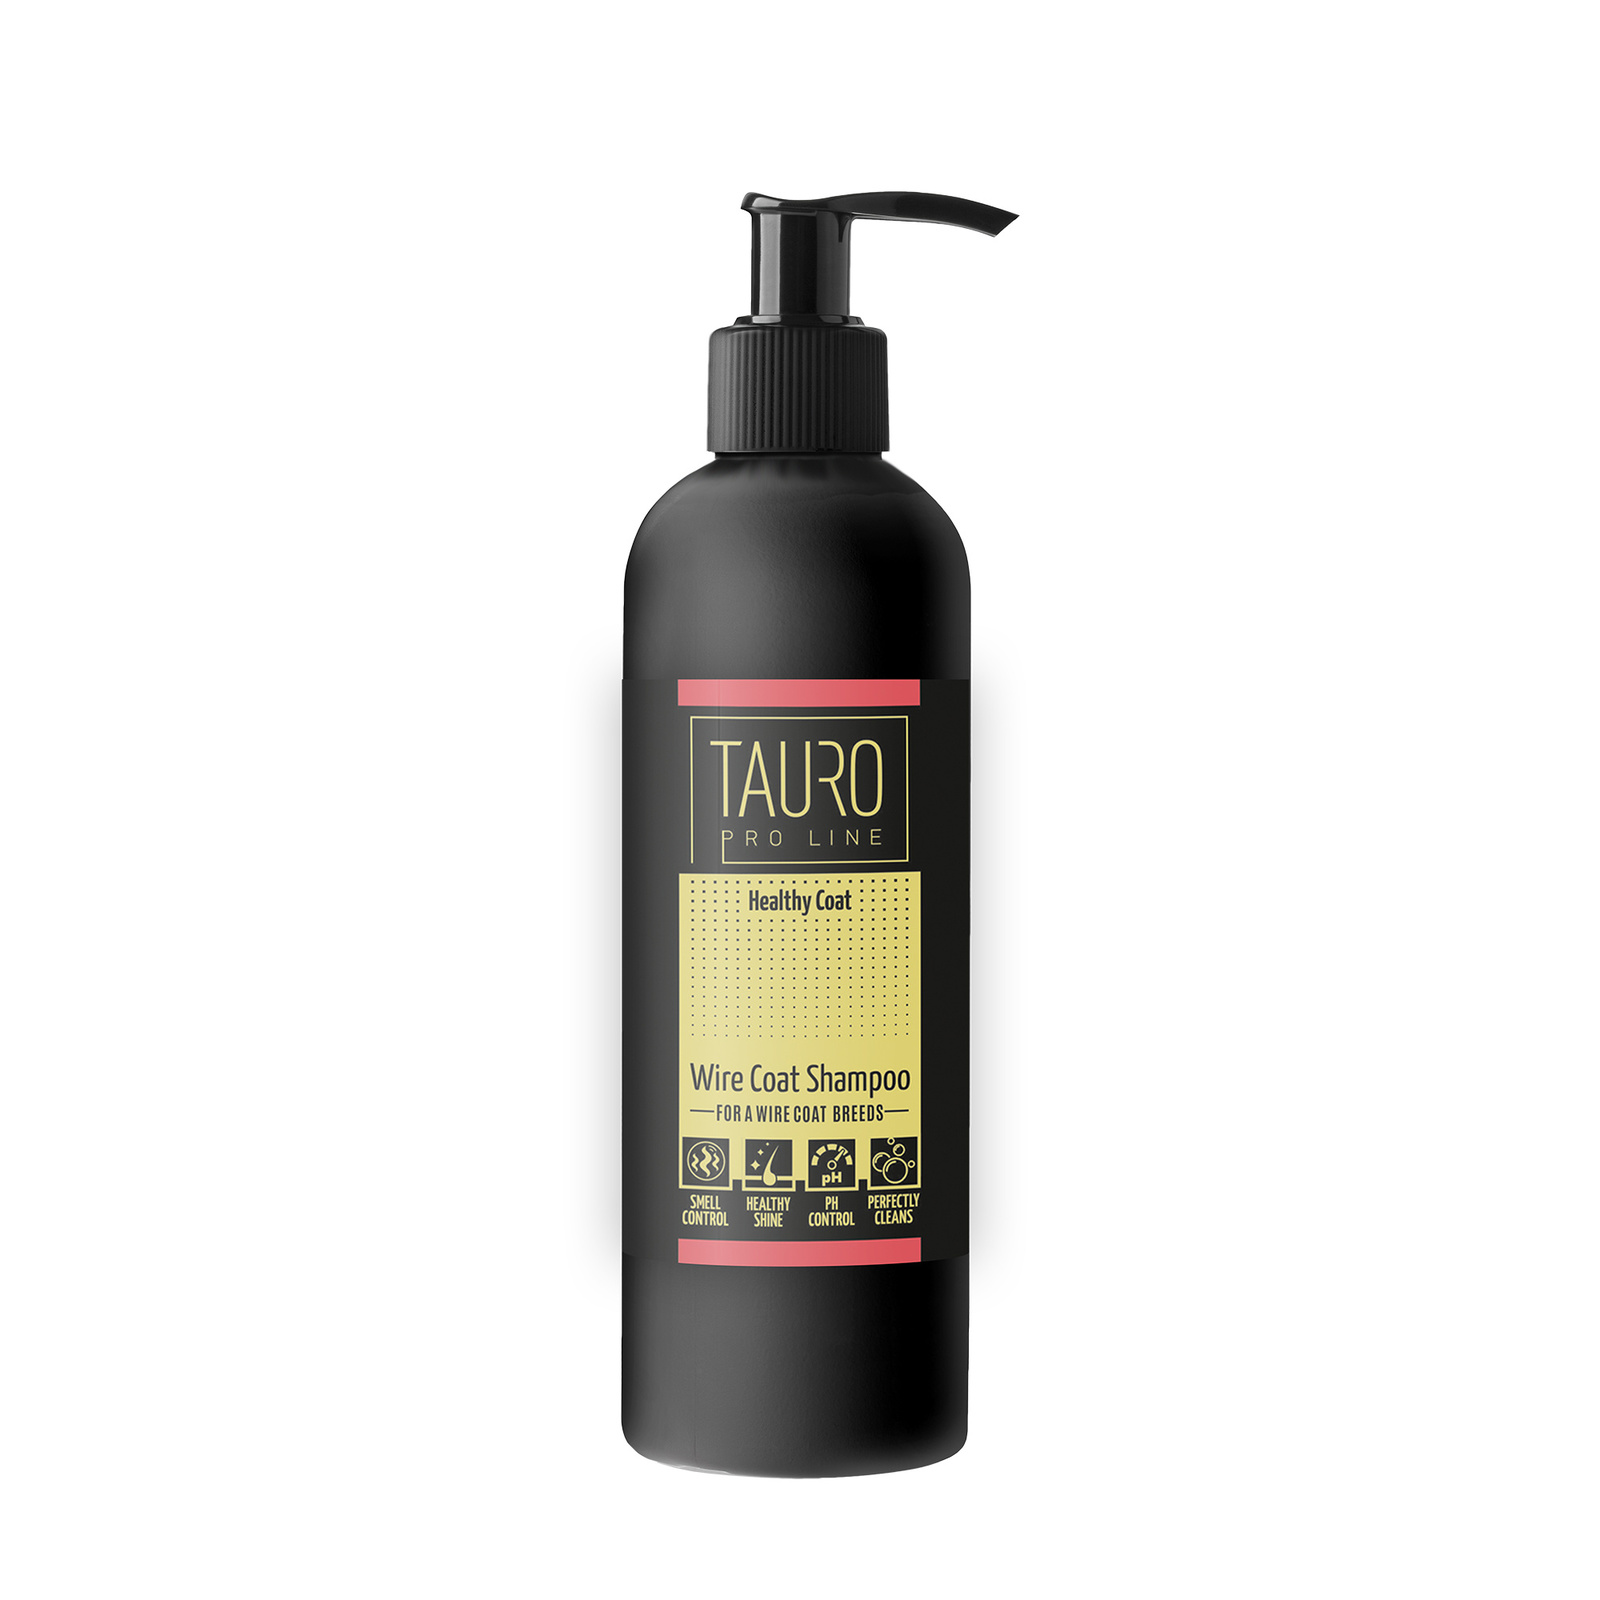 Tauro pro Line Здоровая Шерстка, шампунь для жесткой шерсти, для собак и кошек (250 мл) Tauro Tauro pro Line Здоровая Шерстка, шампунь для жесткой шерсти, для собак и кошек (250 мл) - фото 1